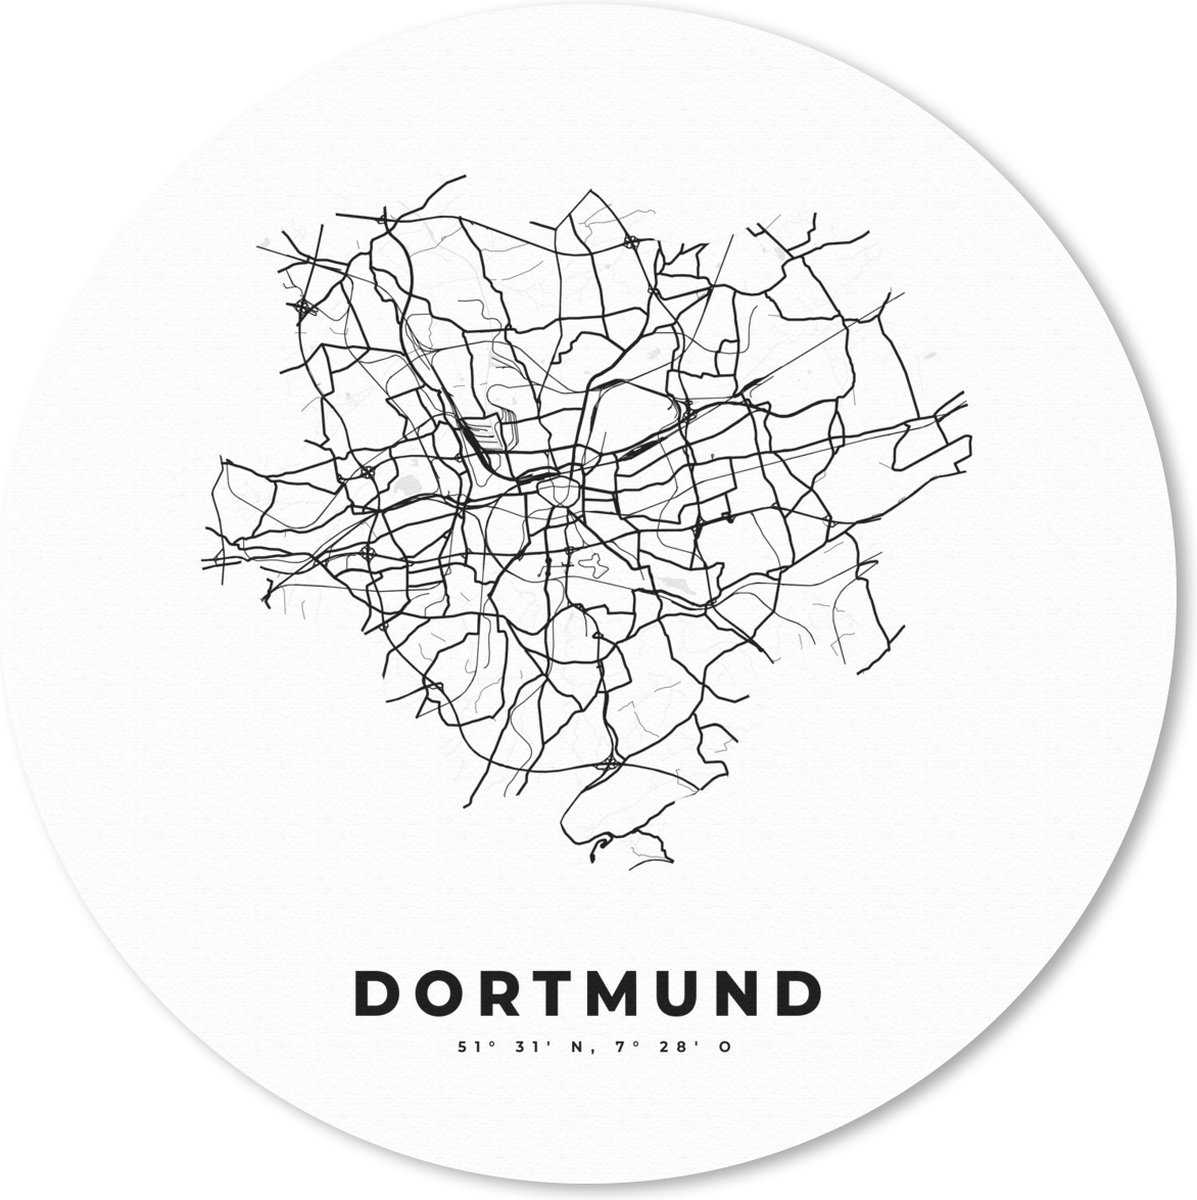 Muismat - Mousepad - Rond - Stadskaart – Plattegrond – Duitsland – Zwart Wit – Dortmund – Kaart - 40x40 cm - Ronde muismat